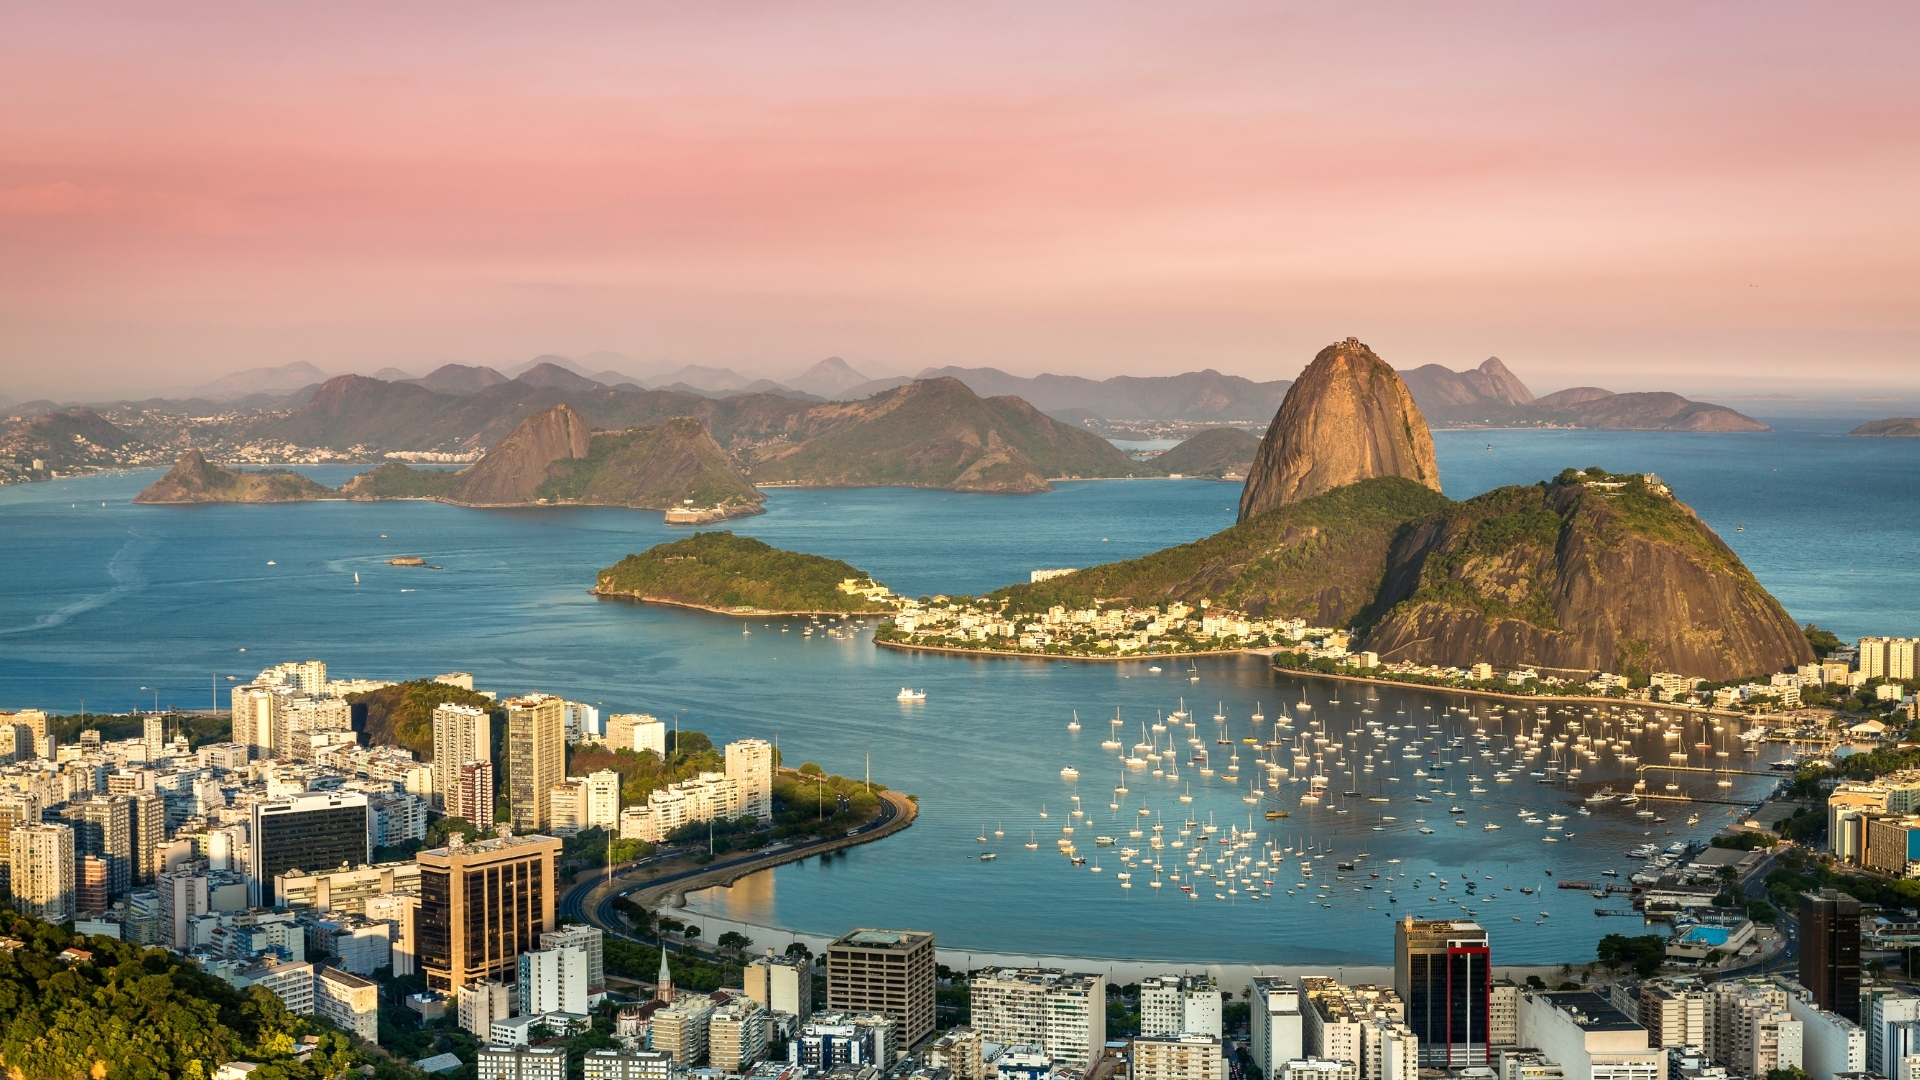 Superbid Marketplace tem diversos imóveis no Rio de Janeiro com descontos de até 70%